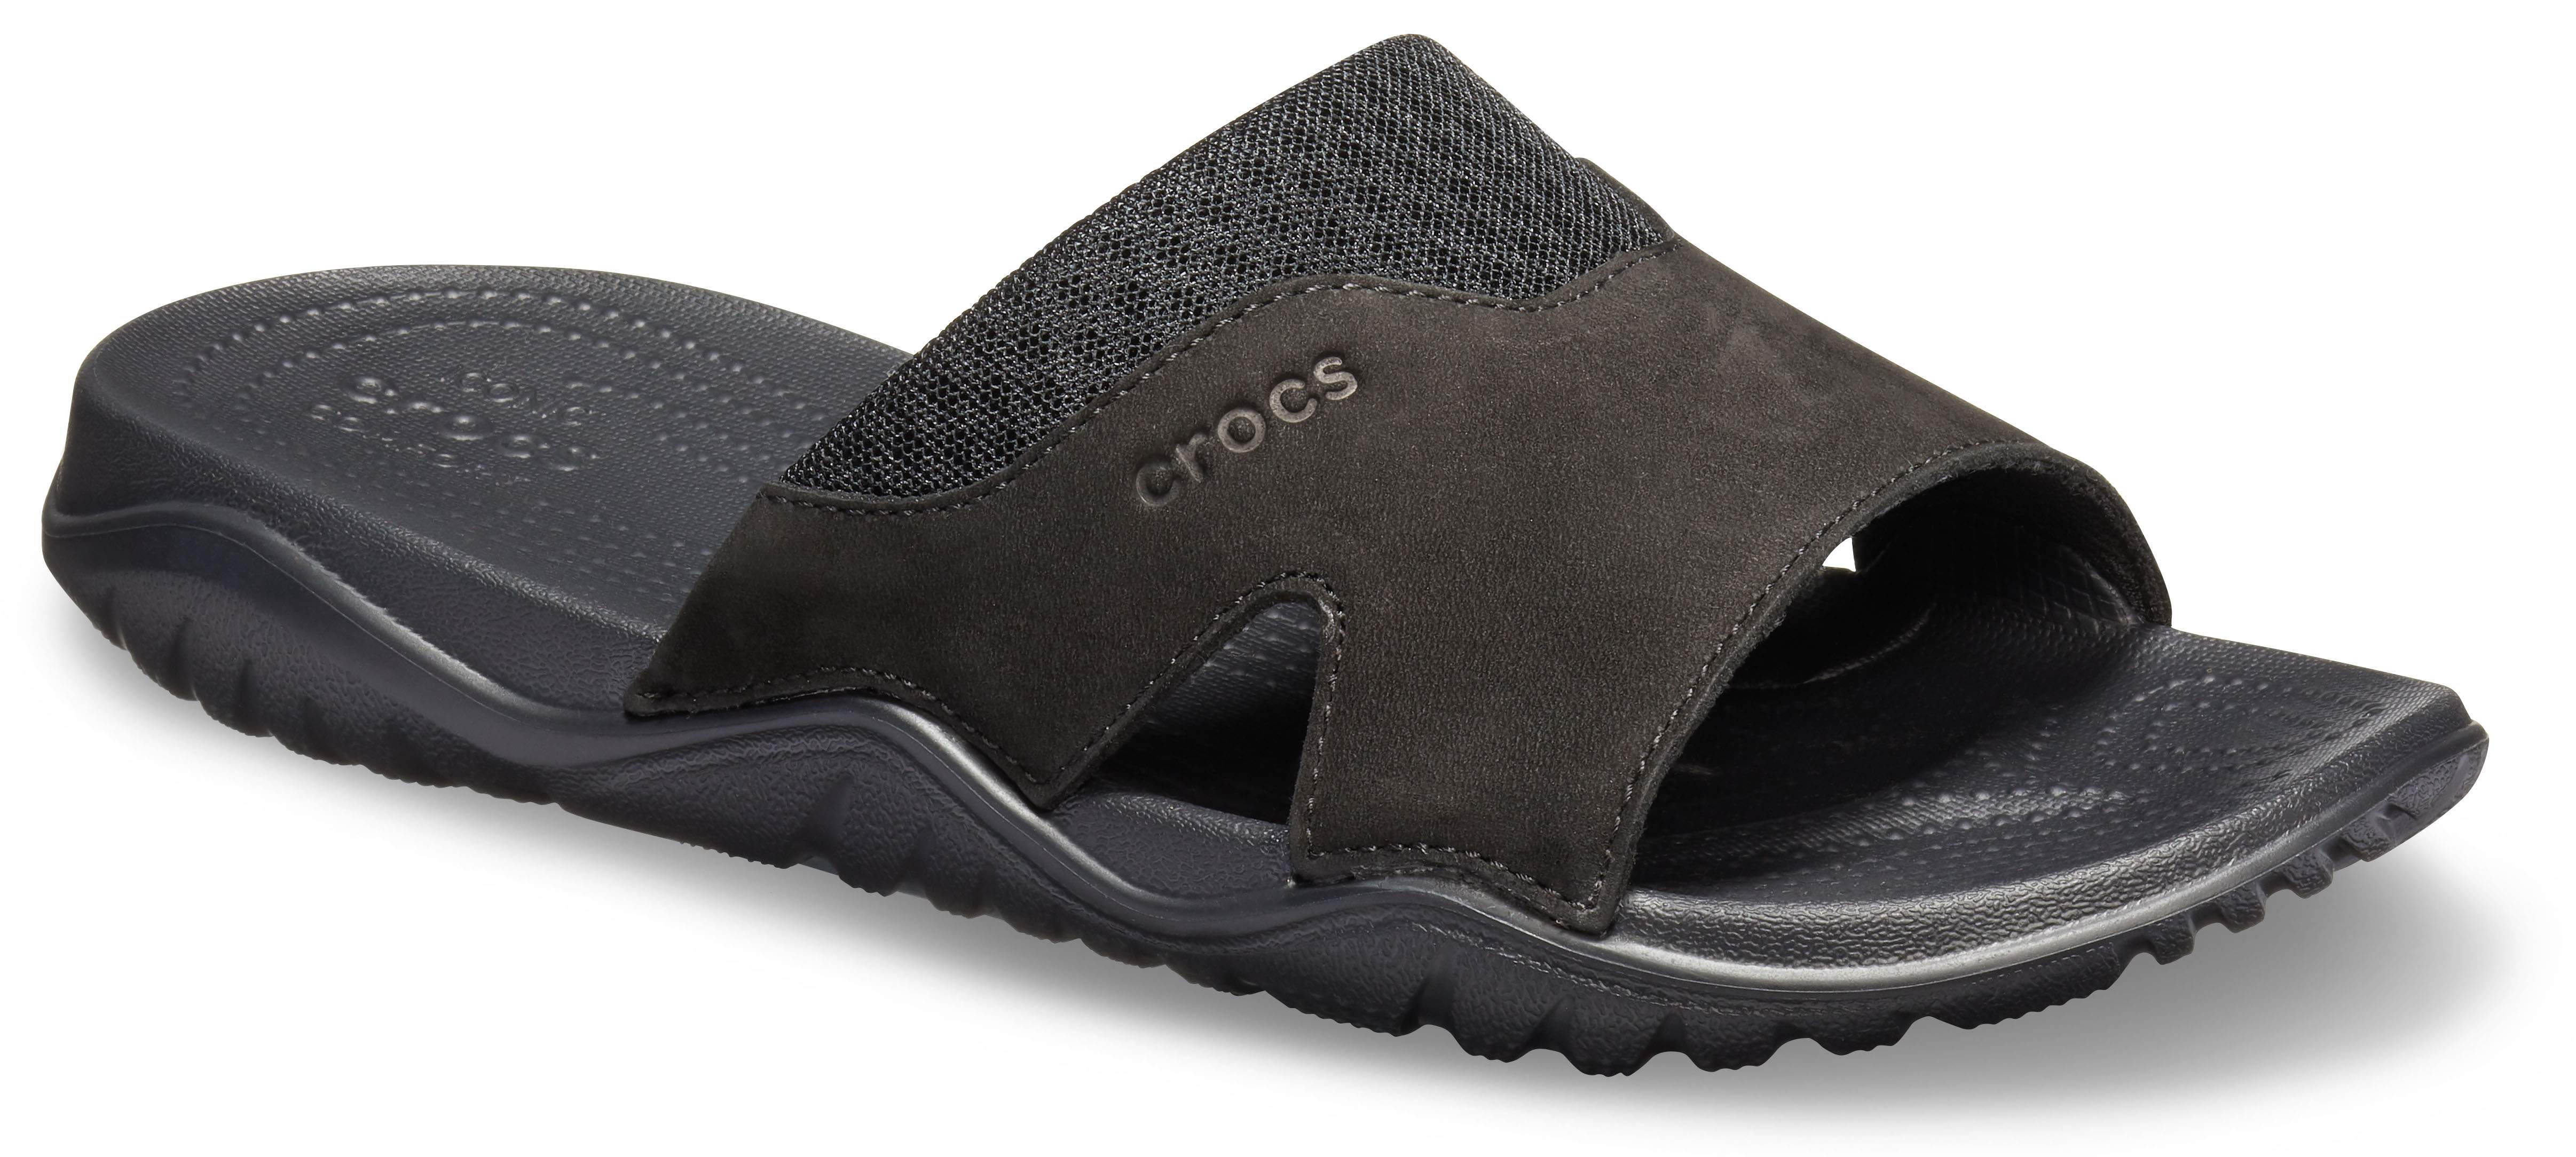 crocs mens leather sandals